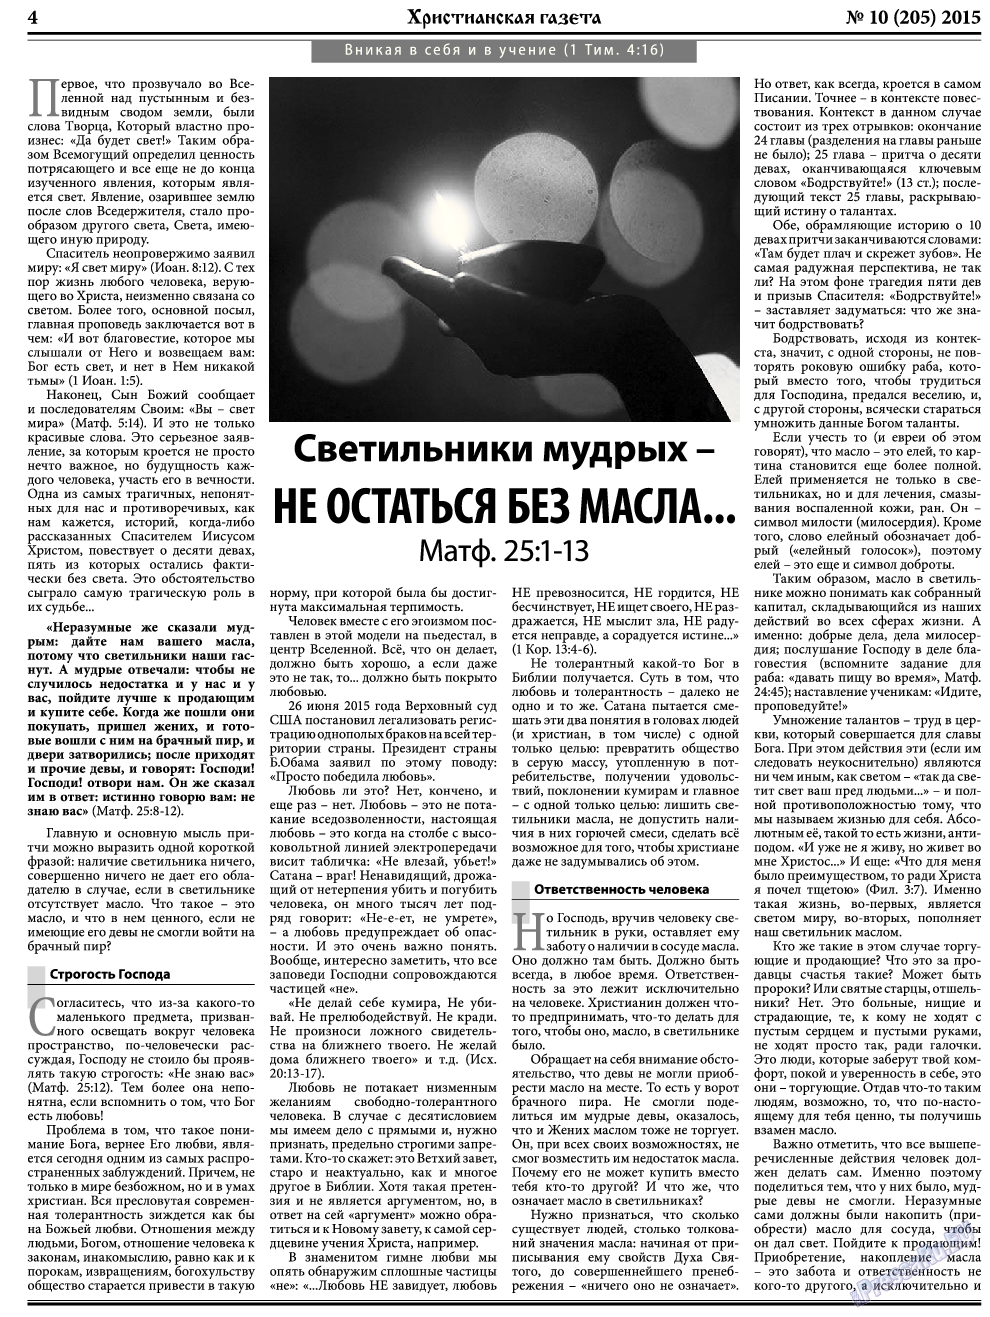 Христианская газета, газета. 2015 №10 стр.4